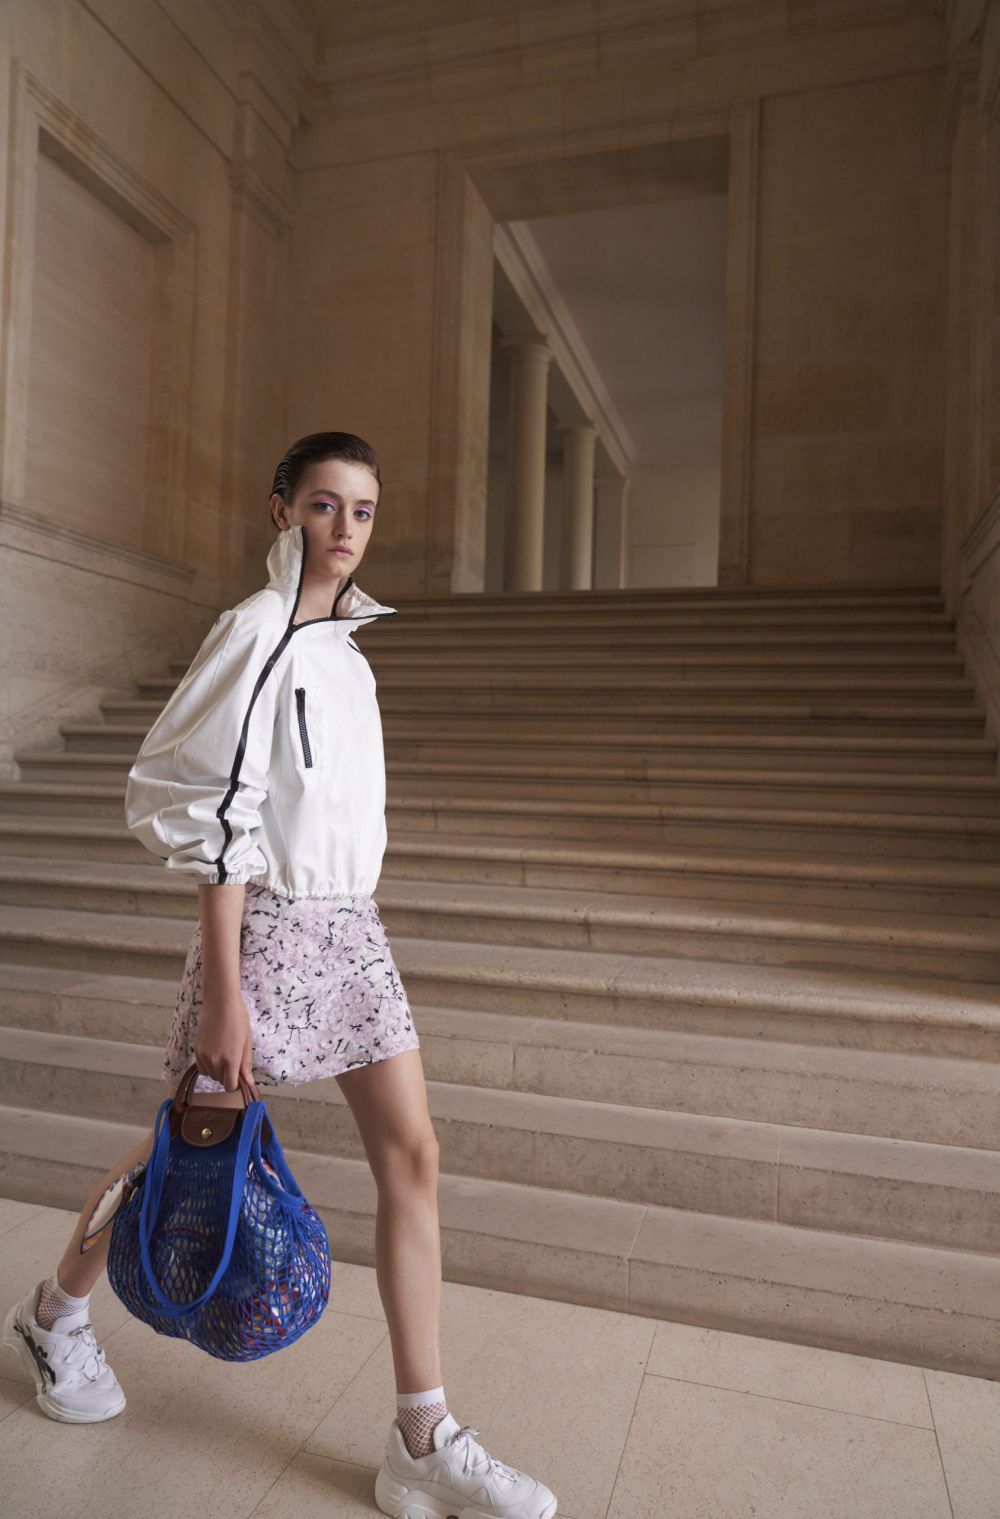 Longchamp ロンシャン 21年春夏コレクションを発表 ゆるさ をまとった現代パリジェンヌ像 Fashion Bible 宮田 理江